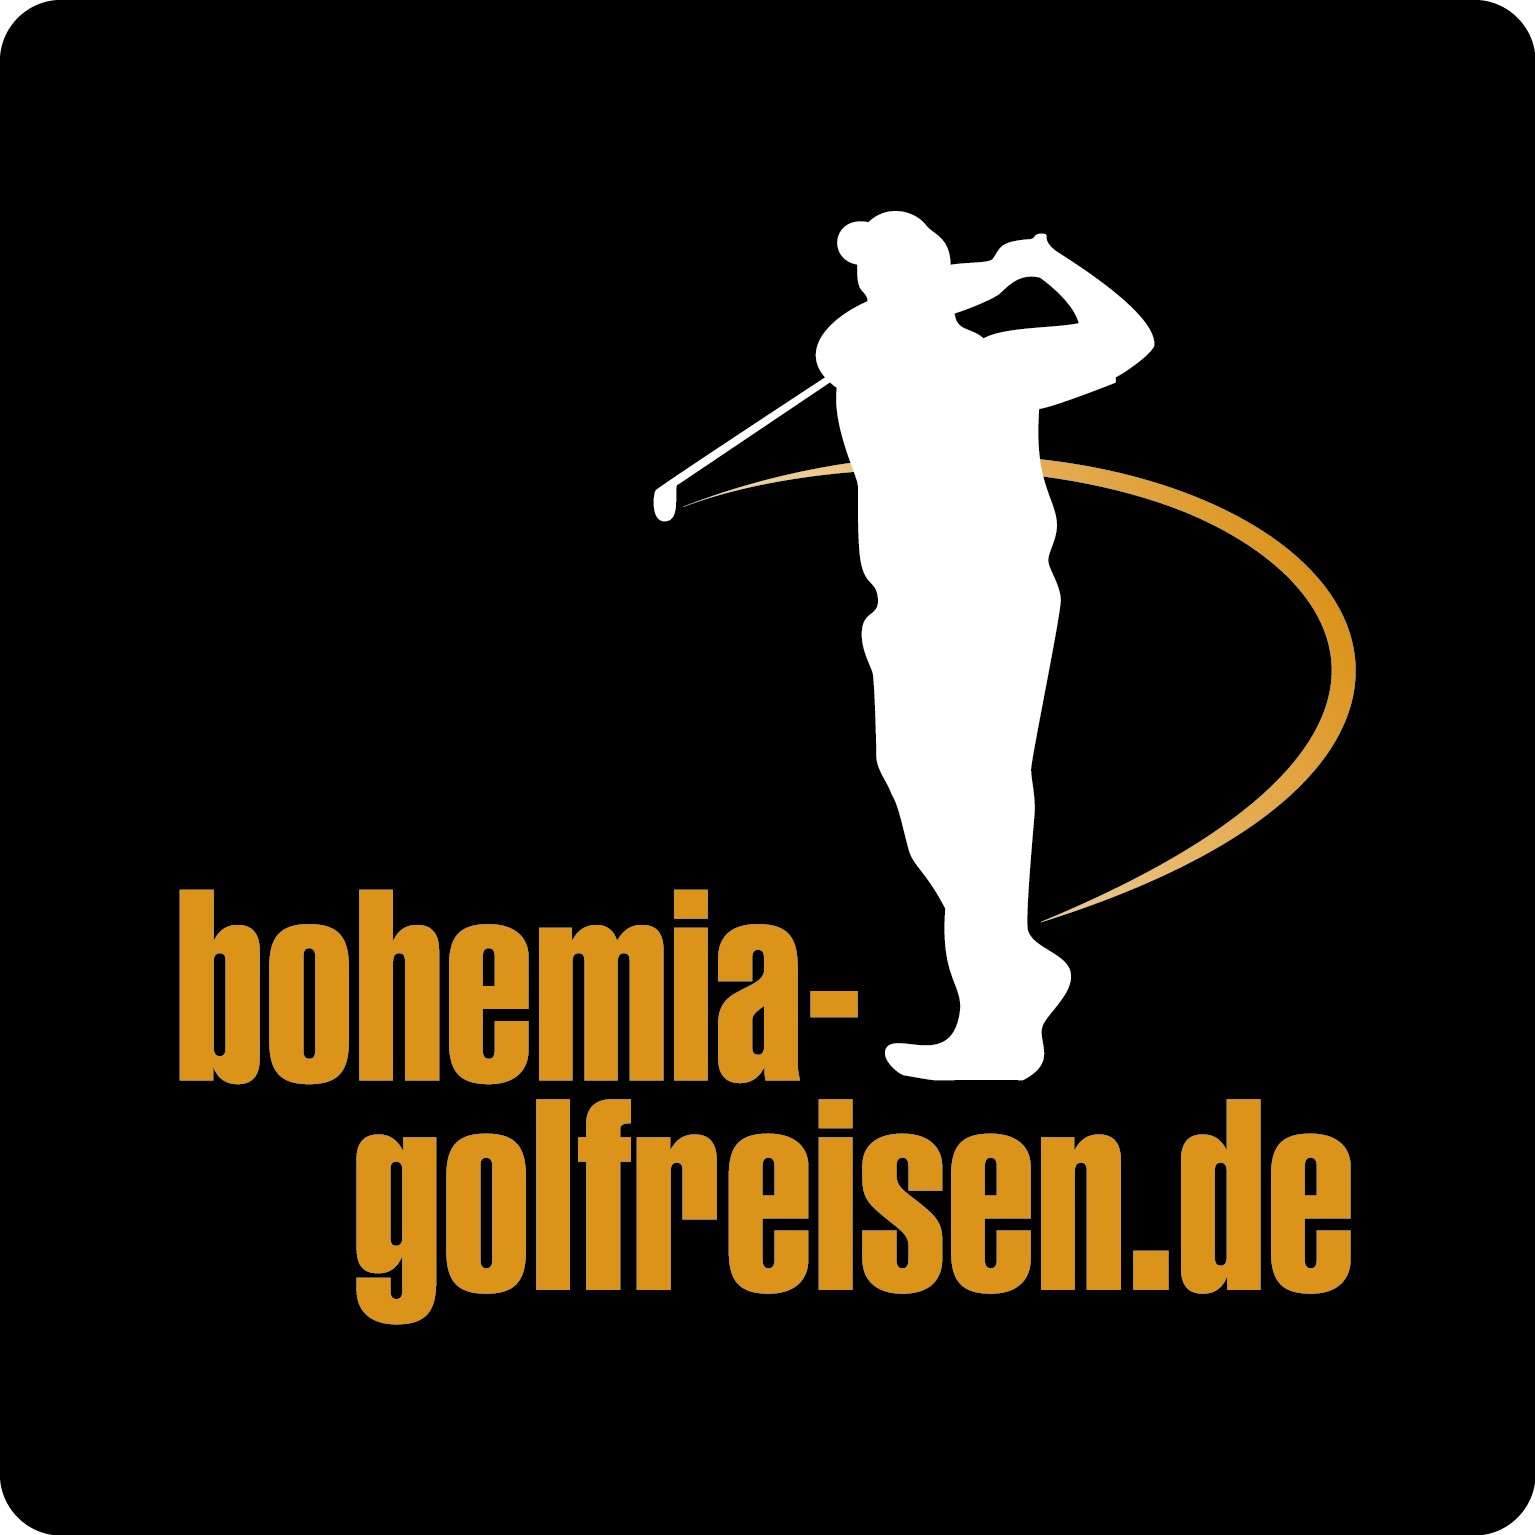 bohemia-golf-reisen